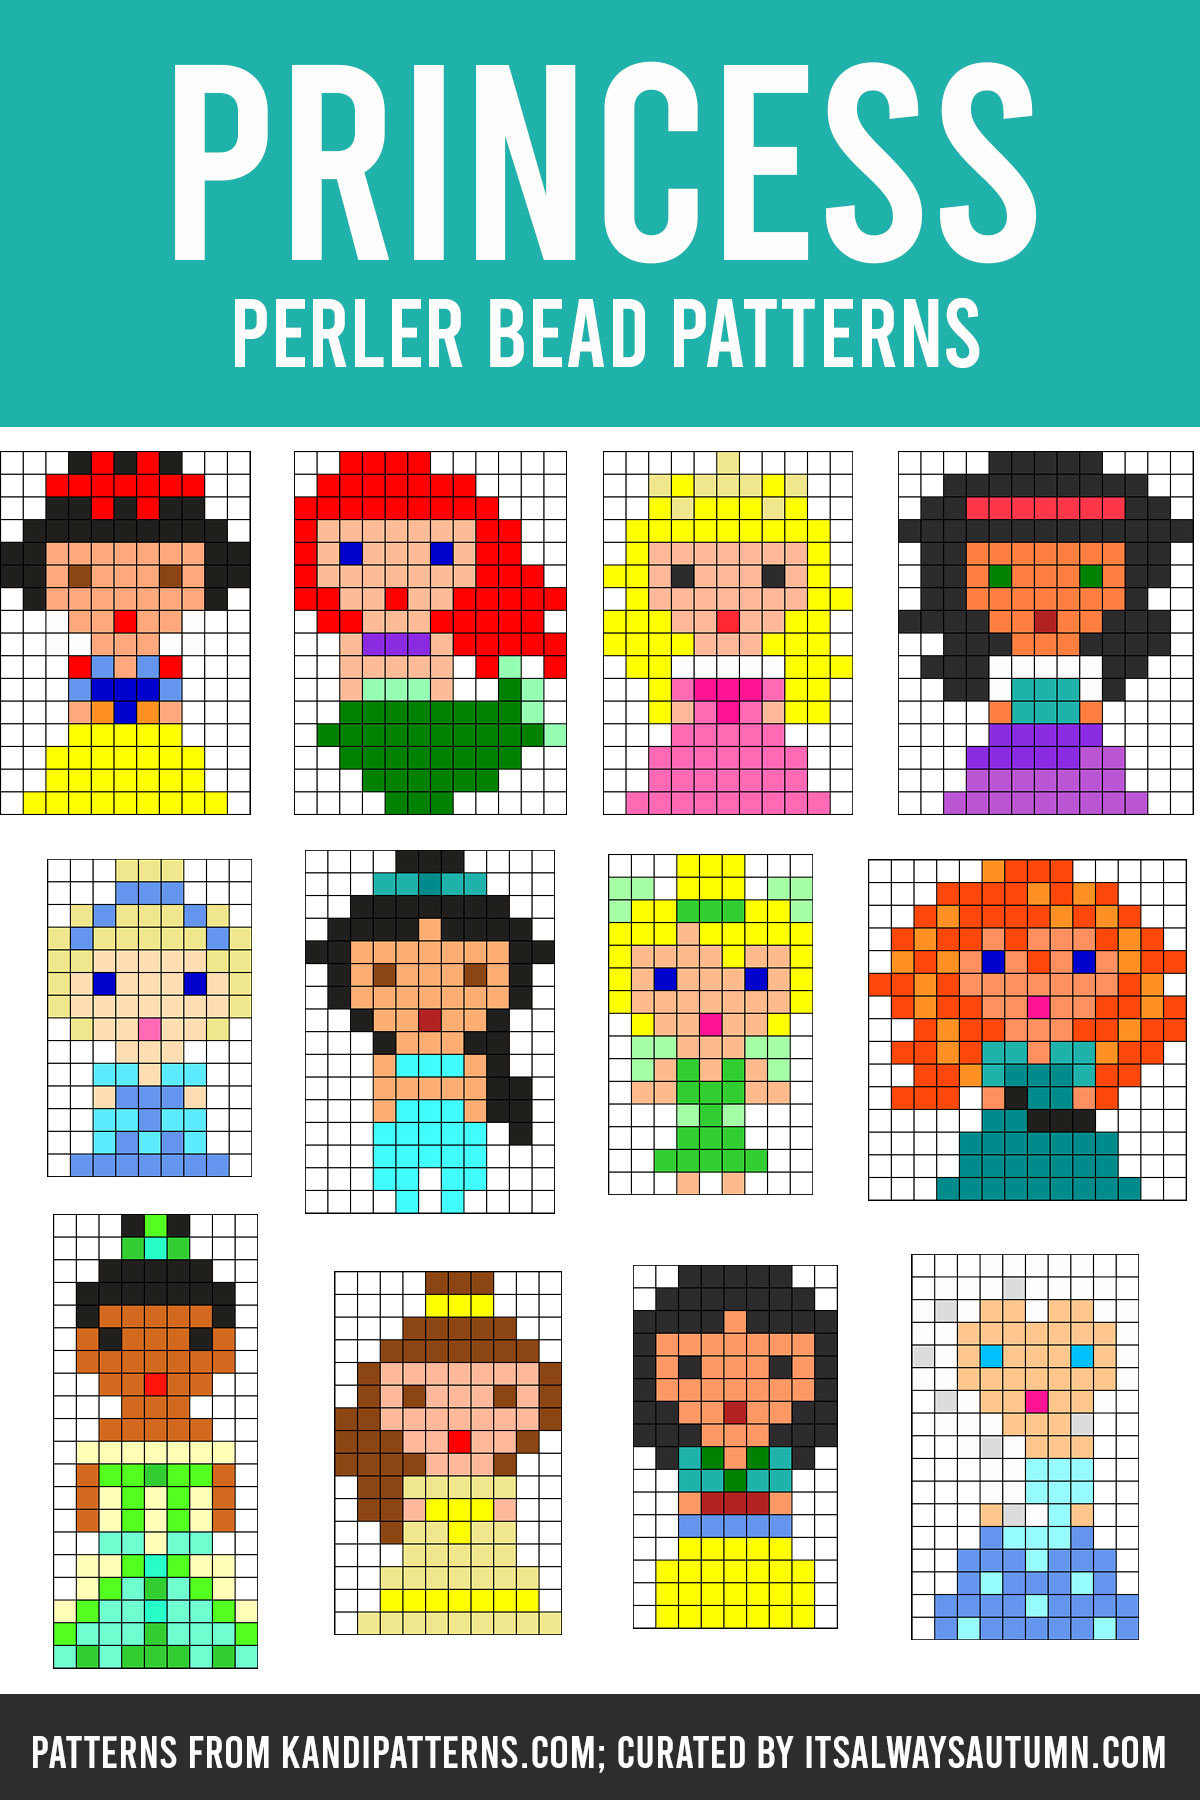 Perler Fused Bead Activity Kit-Disney Little Mermaid